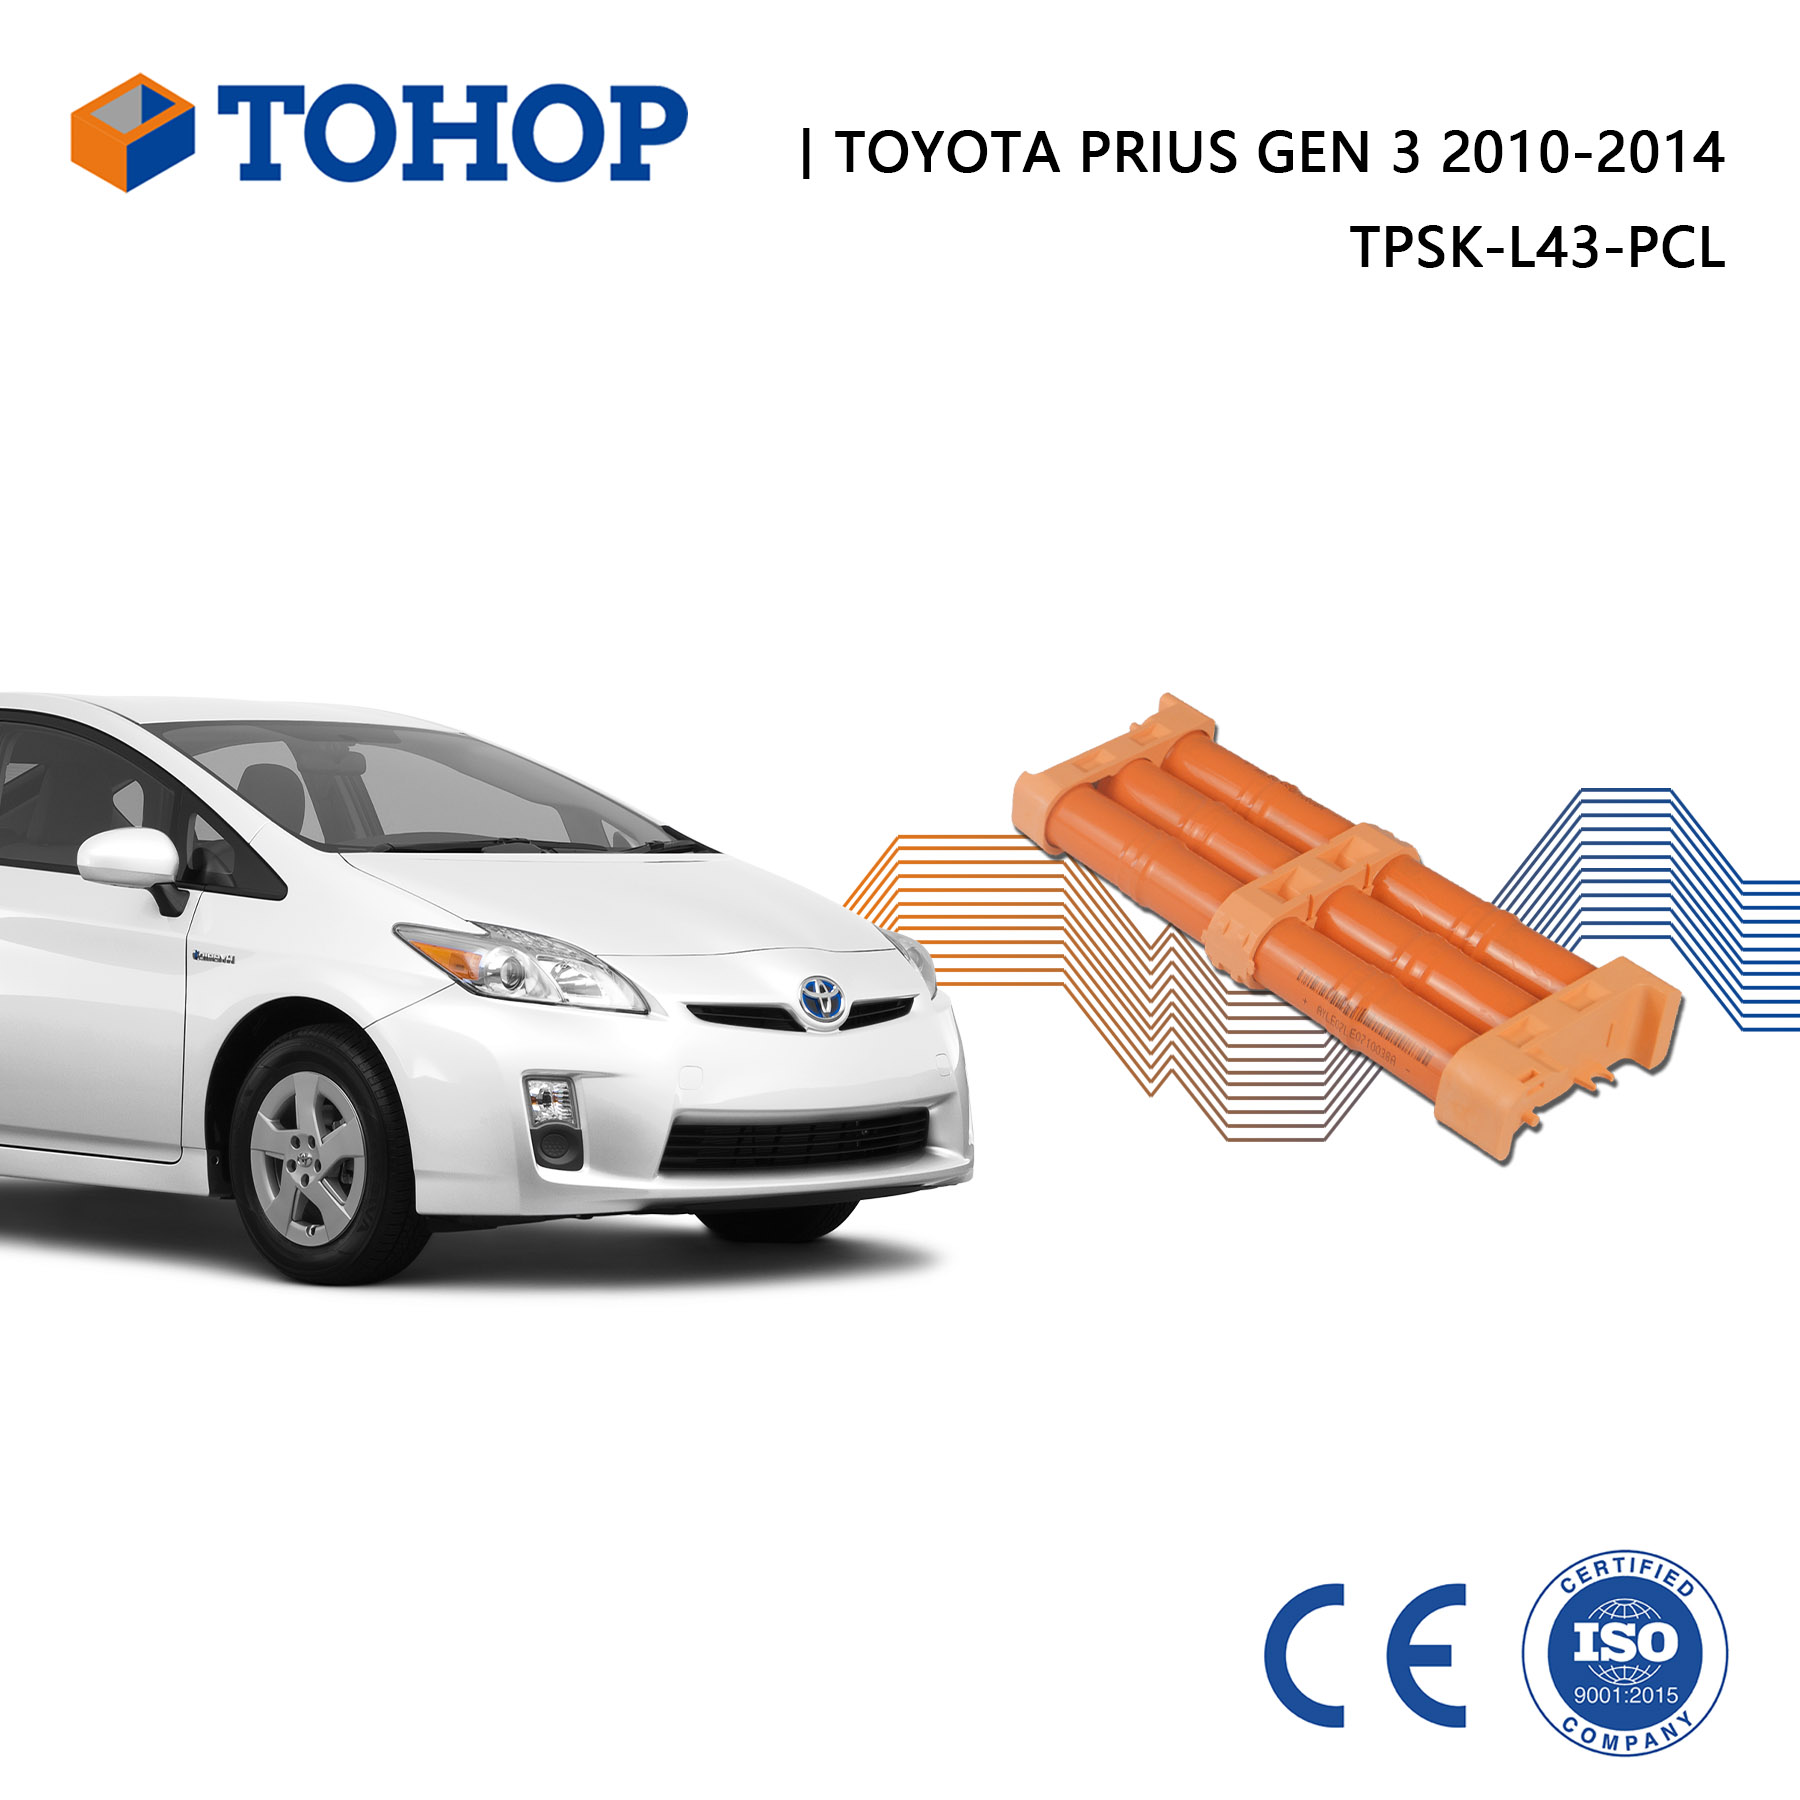 Batería de coche híbrida para Toyota Prius 2010-2015 Batería híbrida Nimh de repuesto